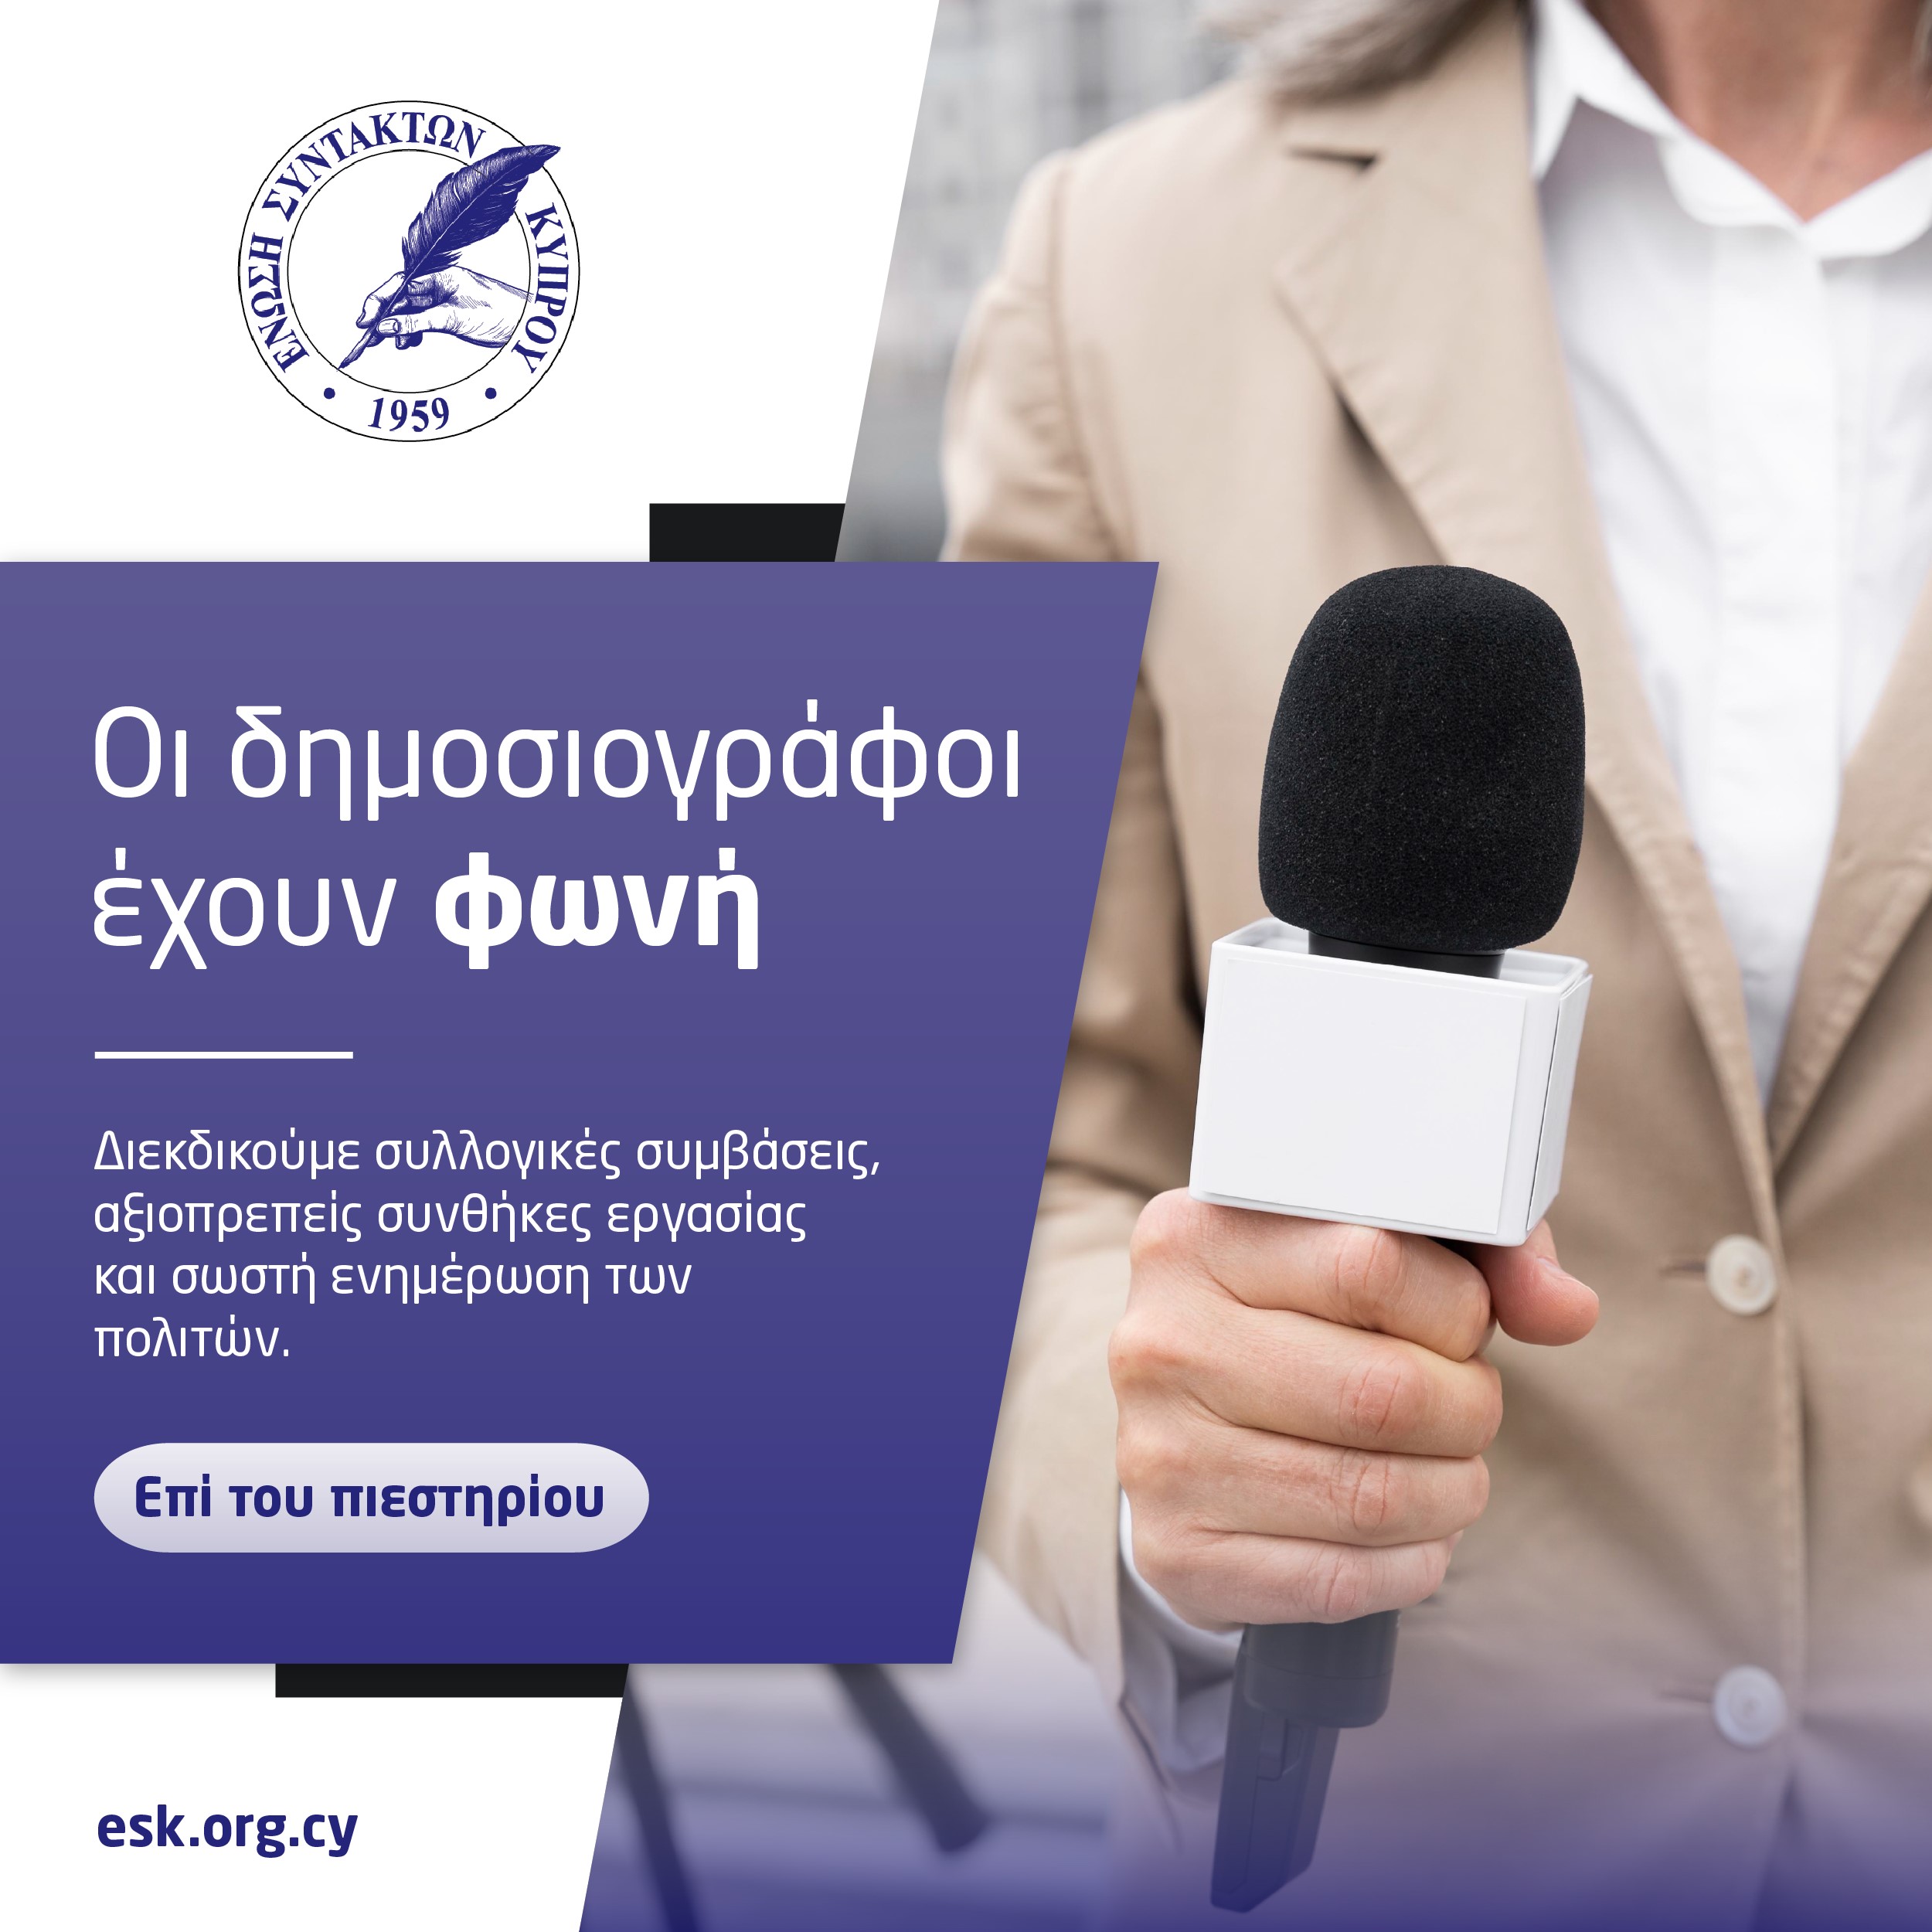 Η ΕΑΚ στηρίζει την εκστρατεία της ΕΣΚ με σύνθημα «Οι δημοσιογράφοι έχουν φωνή»